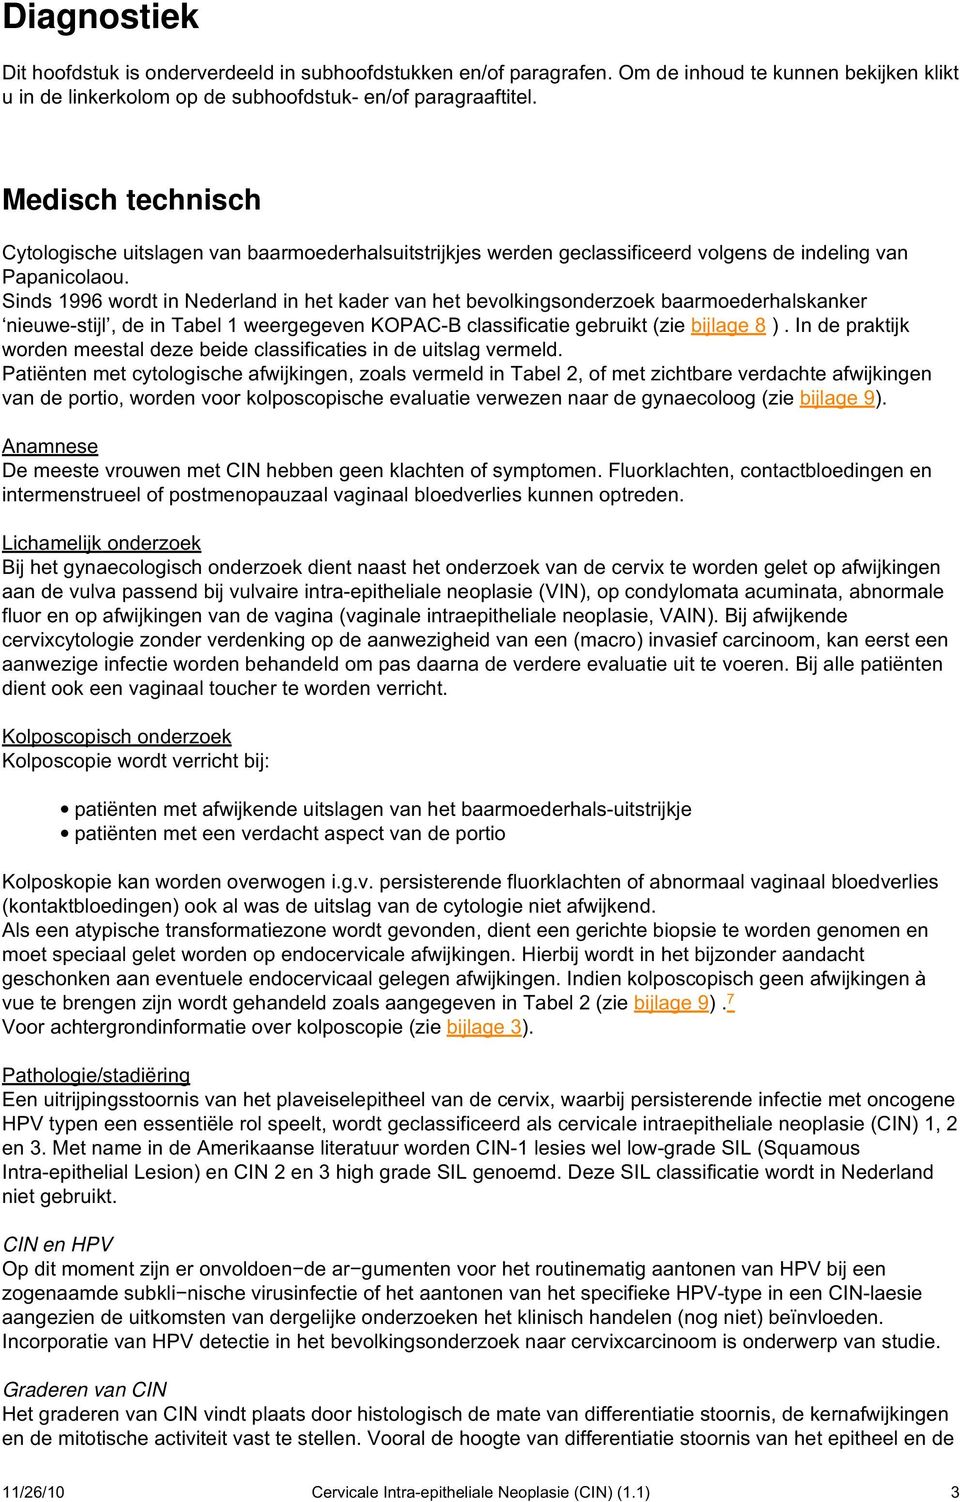 Sinds 1996 wordt in Nederland in het kader van het bevolkingsonderzoek baarmoederhalskanker nieuwe-stijl, de in Tabel 1 weergegeven KOPAC-B classificatie gebruikt (zie bijlage 8 ).